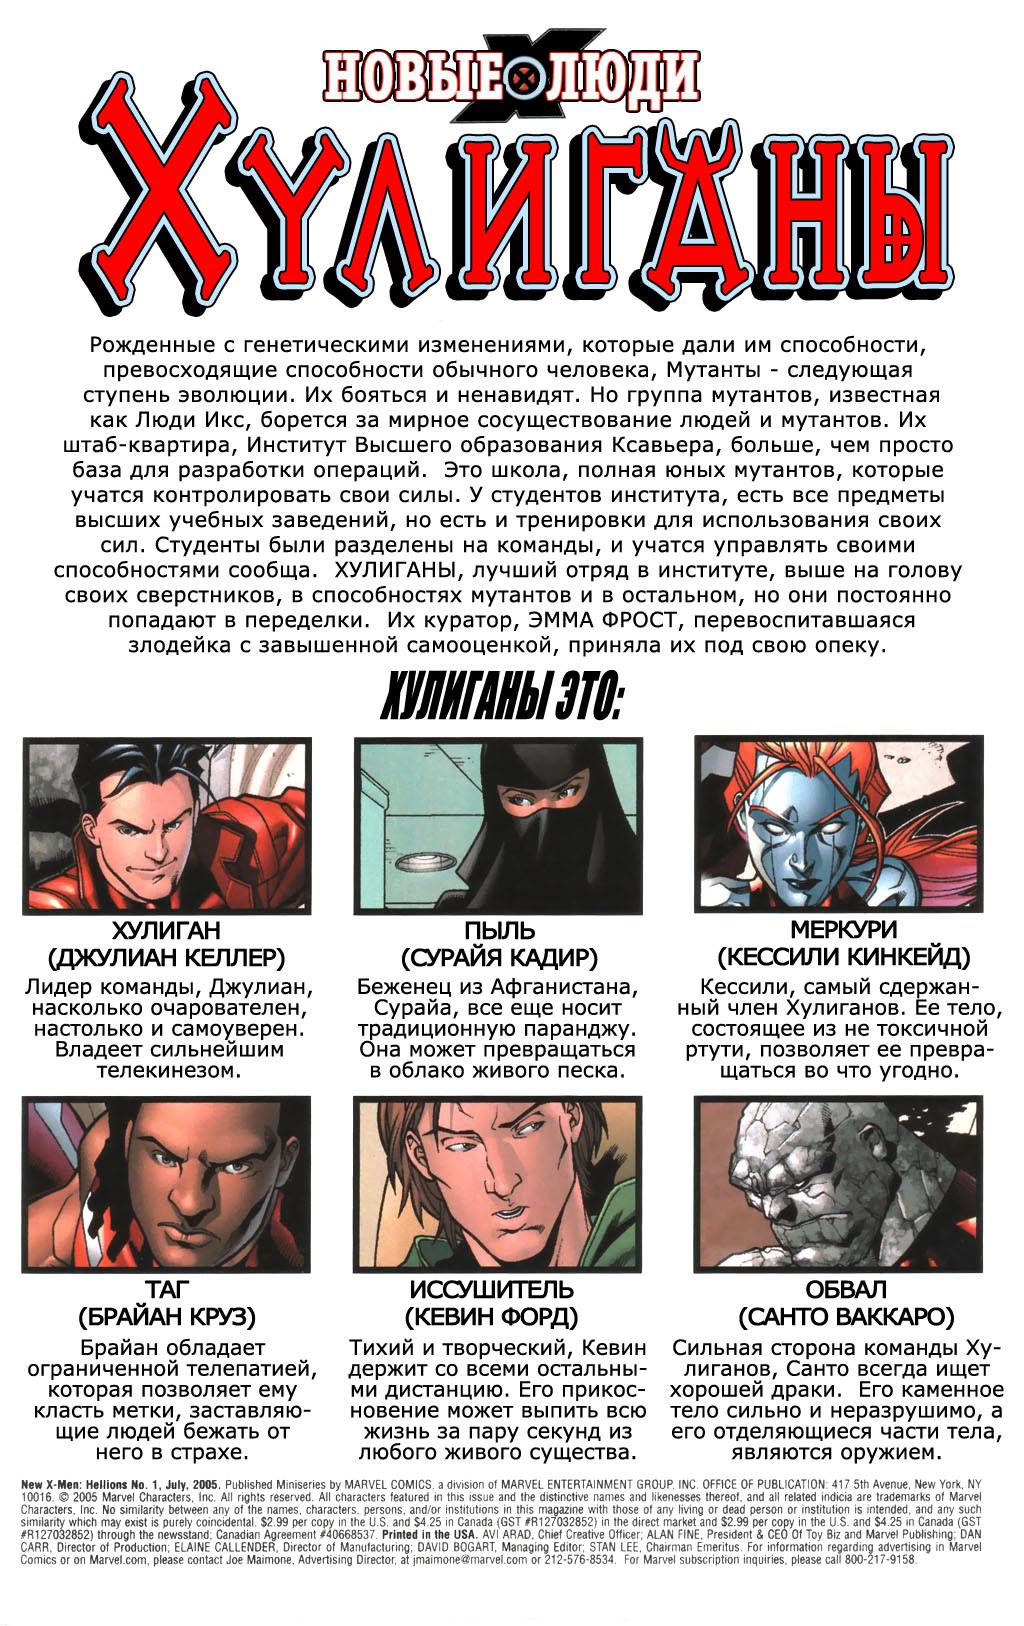 Новые Люди-Икс: Хулиганы №1 онлайн